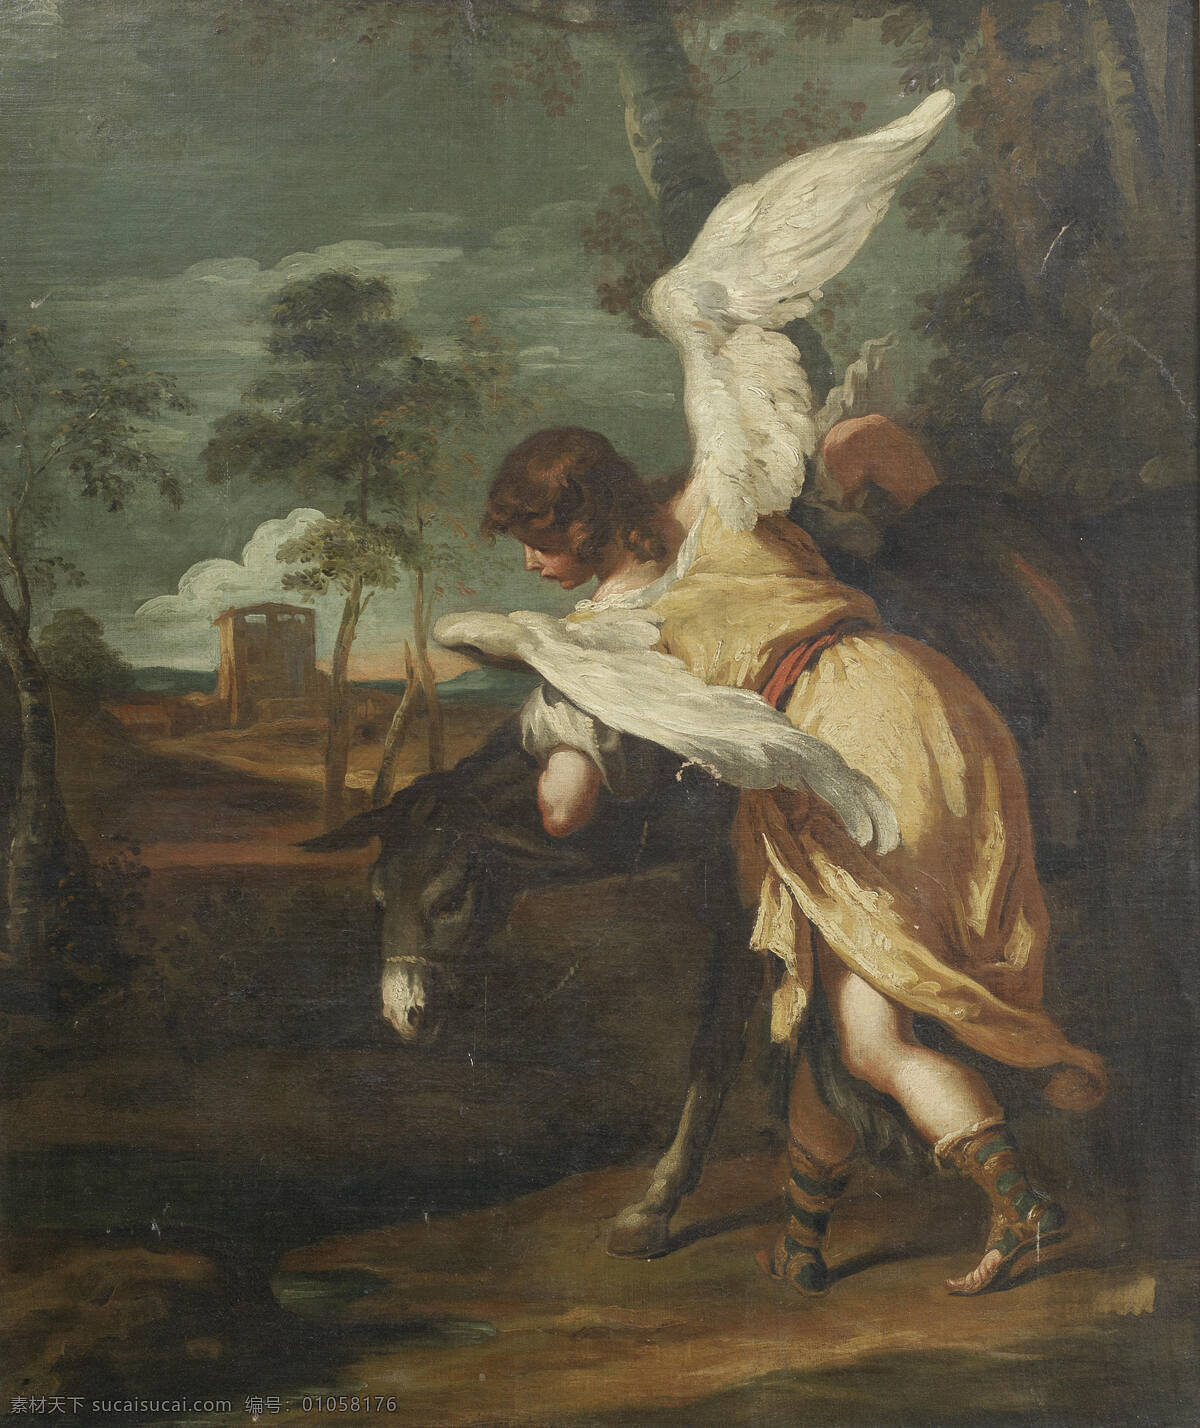 天使与驴 圣经故事 野外 驴 天使 降临 古典油画 油画 绘画书法 文化艺术